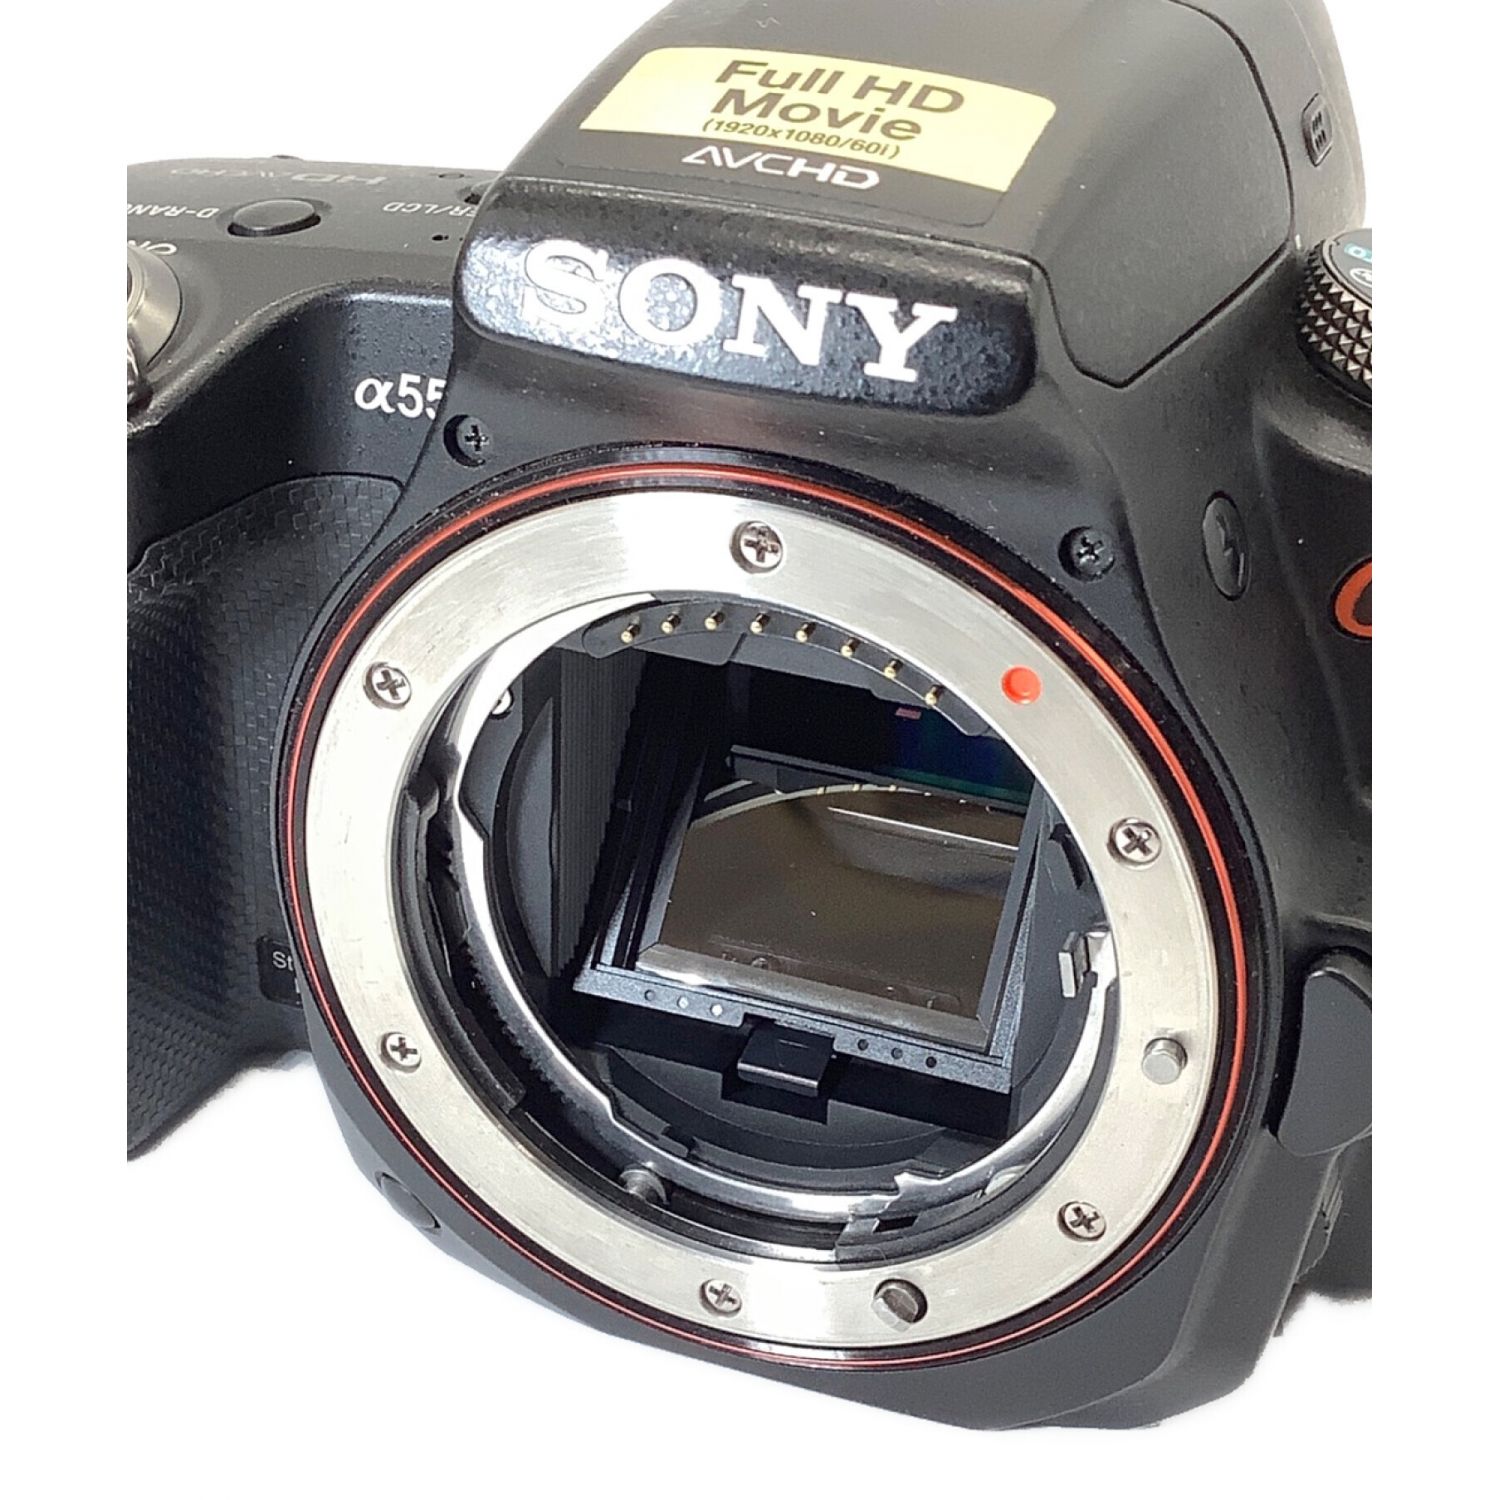 SONY (ソニー) デジタル一眼レフカメラ α55 ダブルズームレンズキット